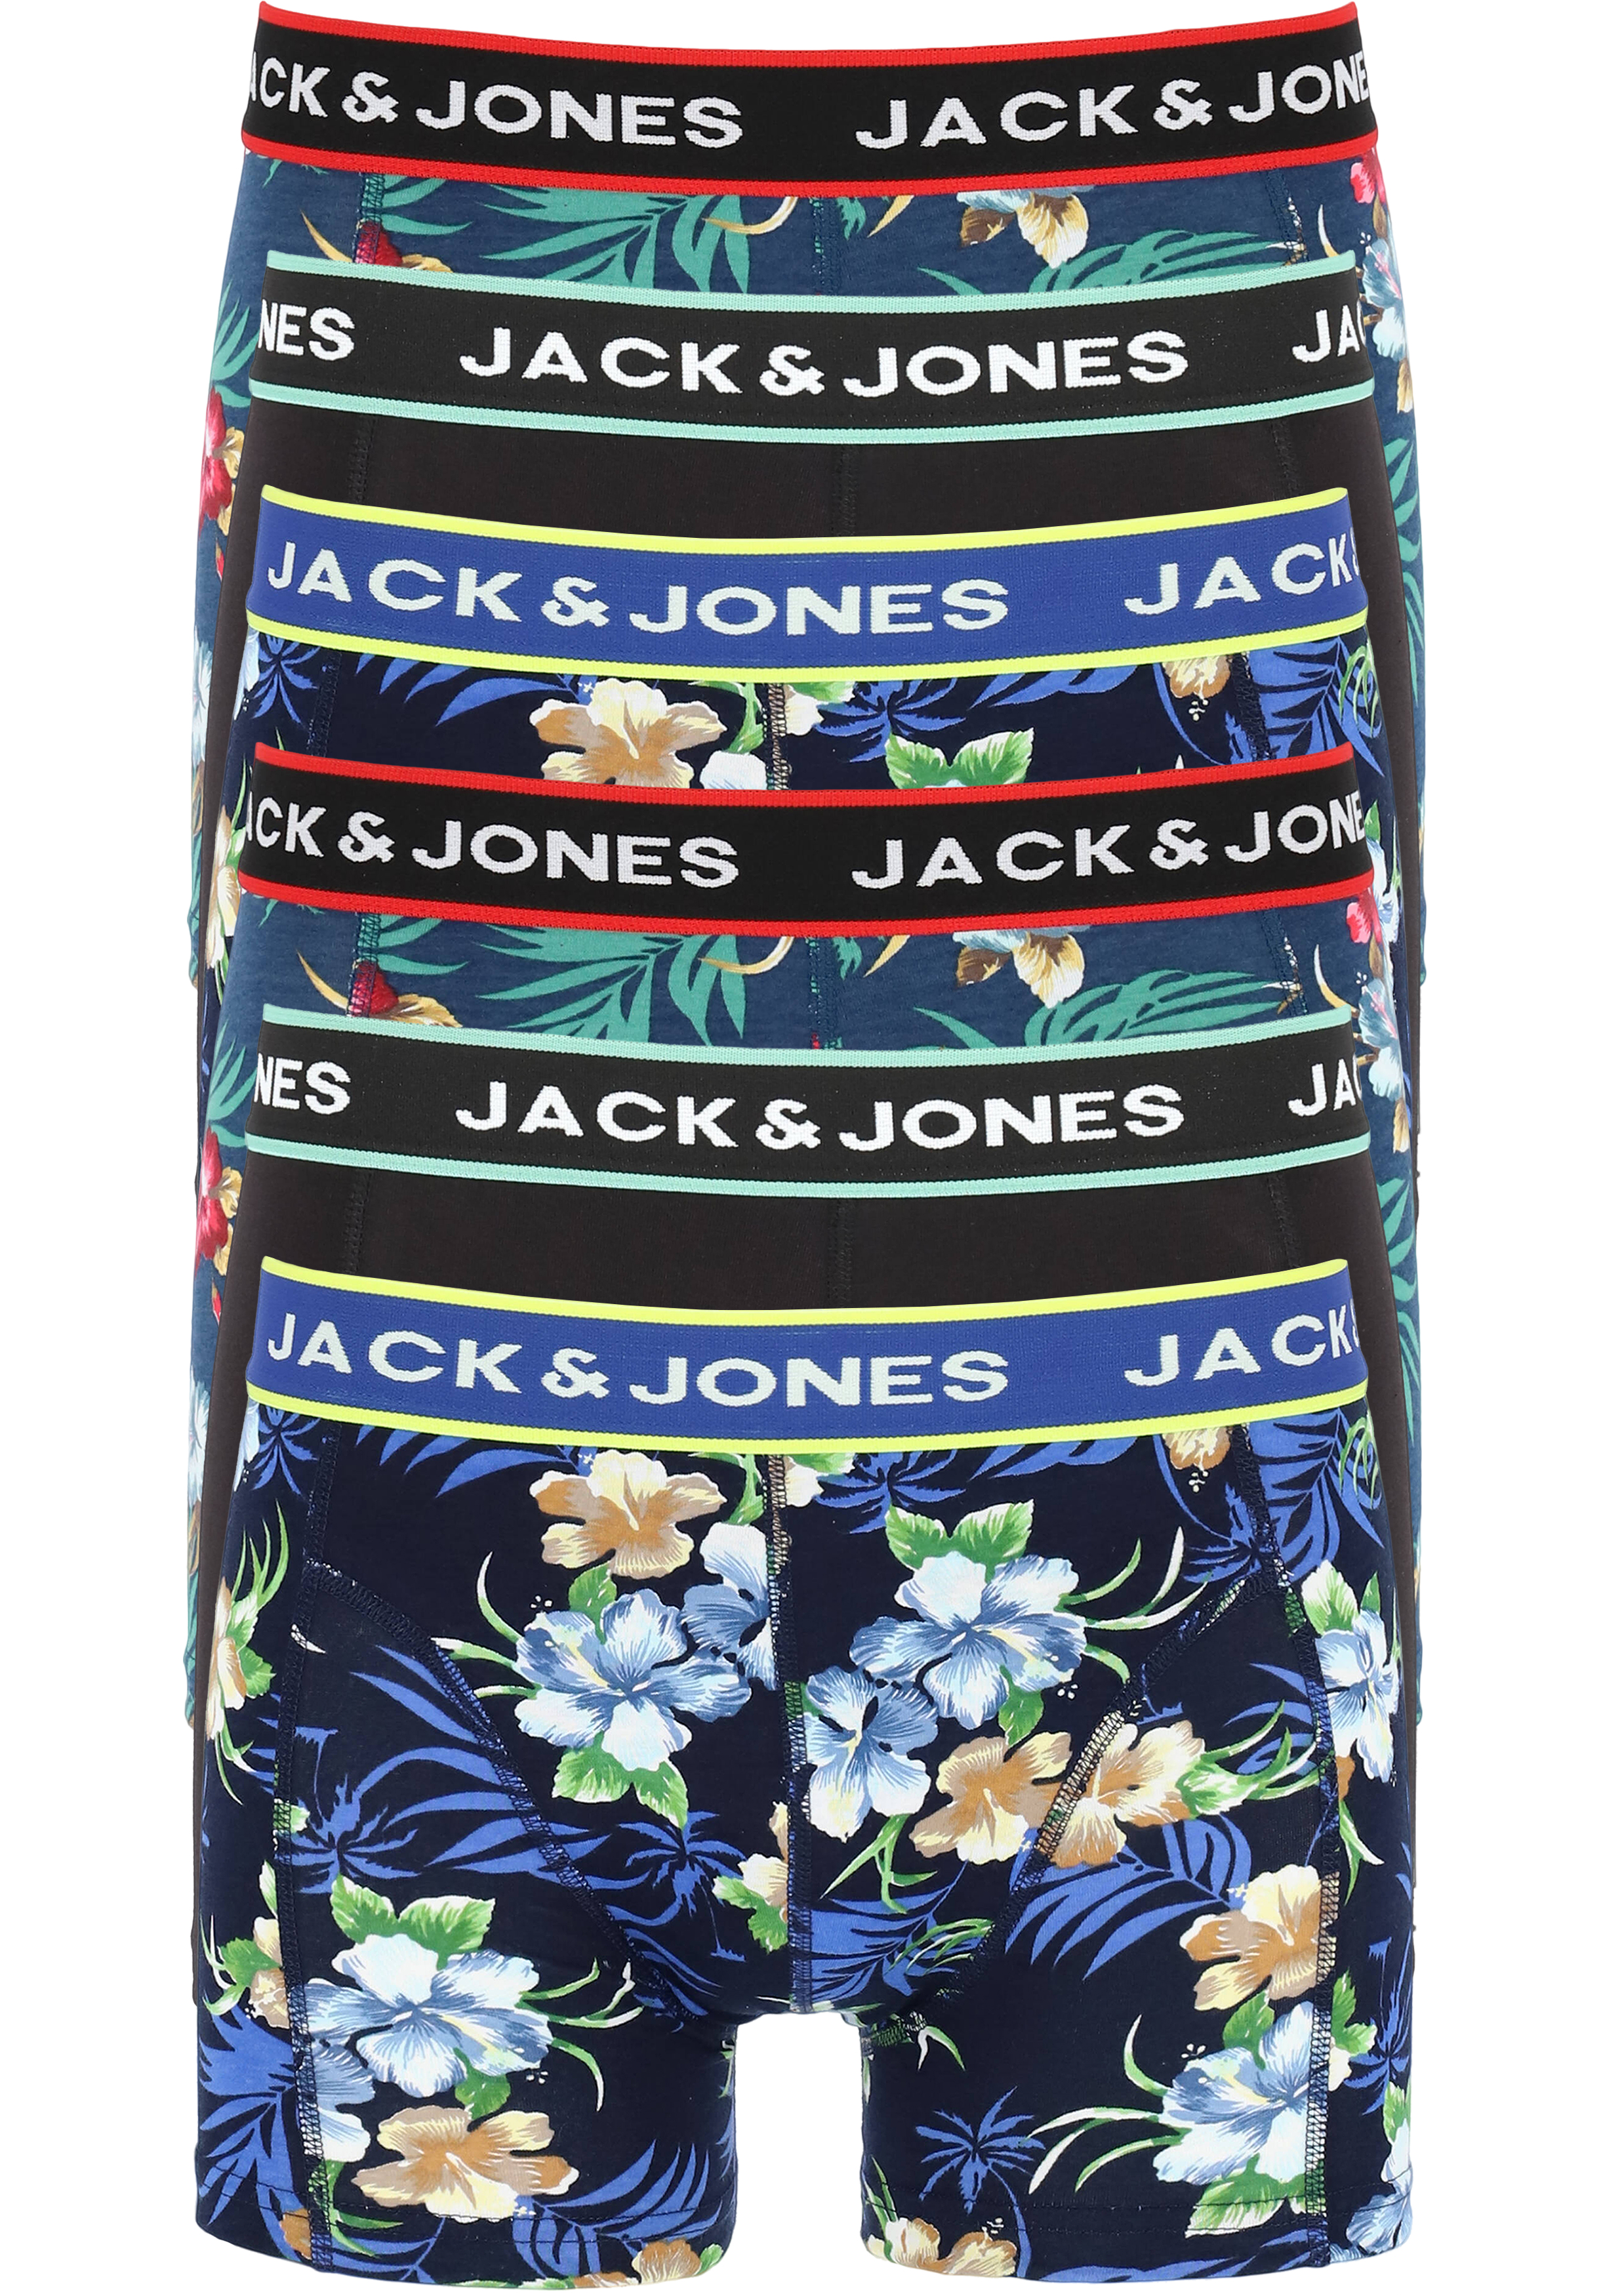 Sportman Picasso salon JACK & JONES boxers Jacflower trunks (6-pack), gebloemd en uni - 20%  Paaskorting op (bijna) alles